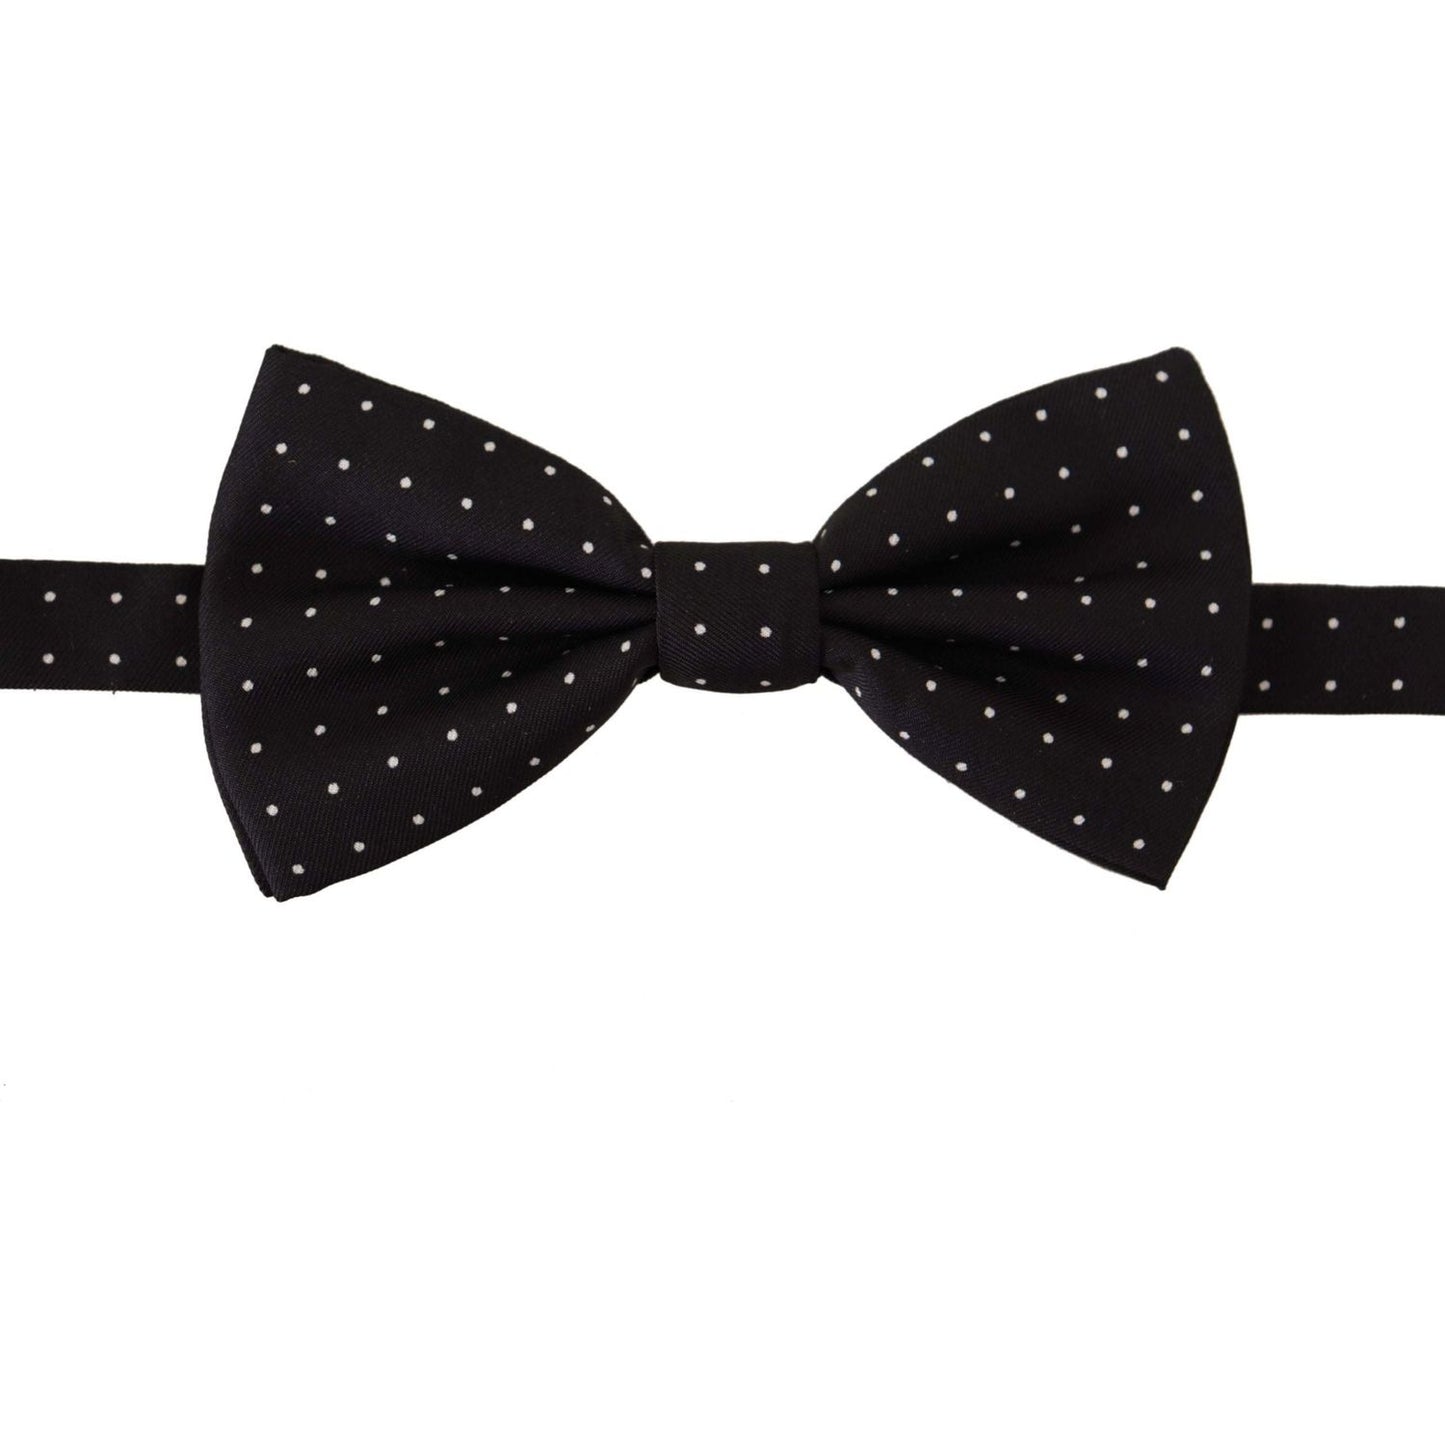 Dolce & Gabbana Elegant Black Polka Dot Silk Bow Tie black-white-polka-dot-100-silk-neck-papillon-tie